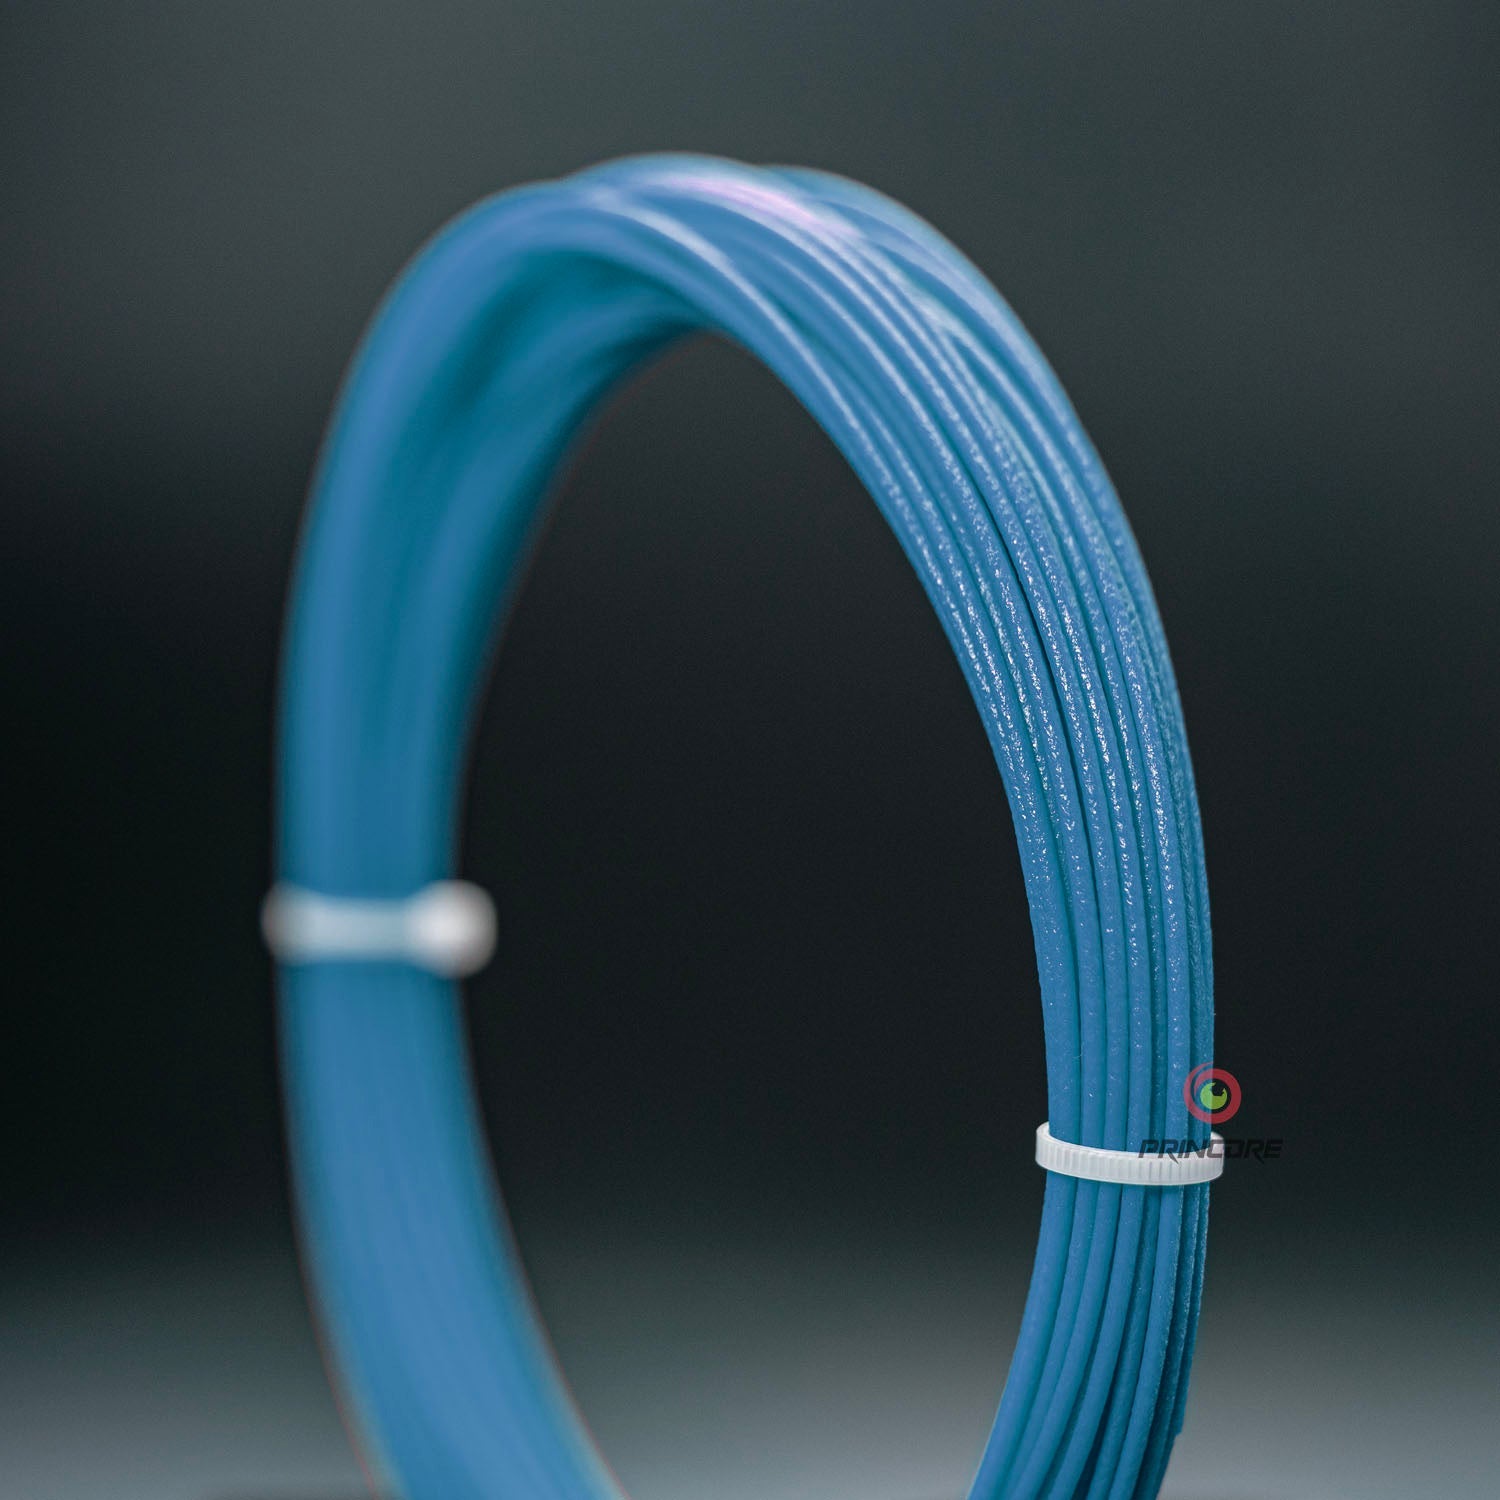 PRINCORE Filament Samples / Proben 15m [1.75mm] 6er-SET Nylon PA12 GF